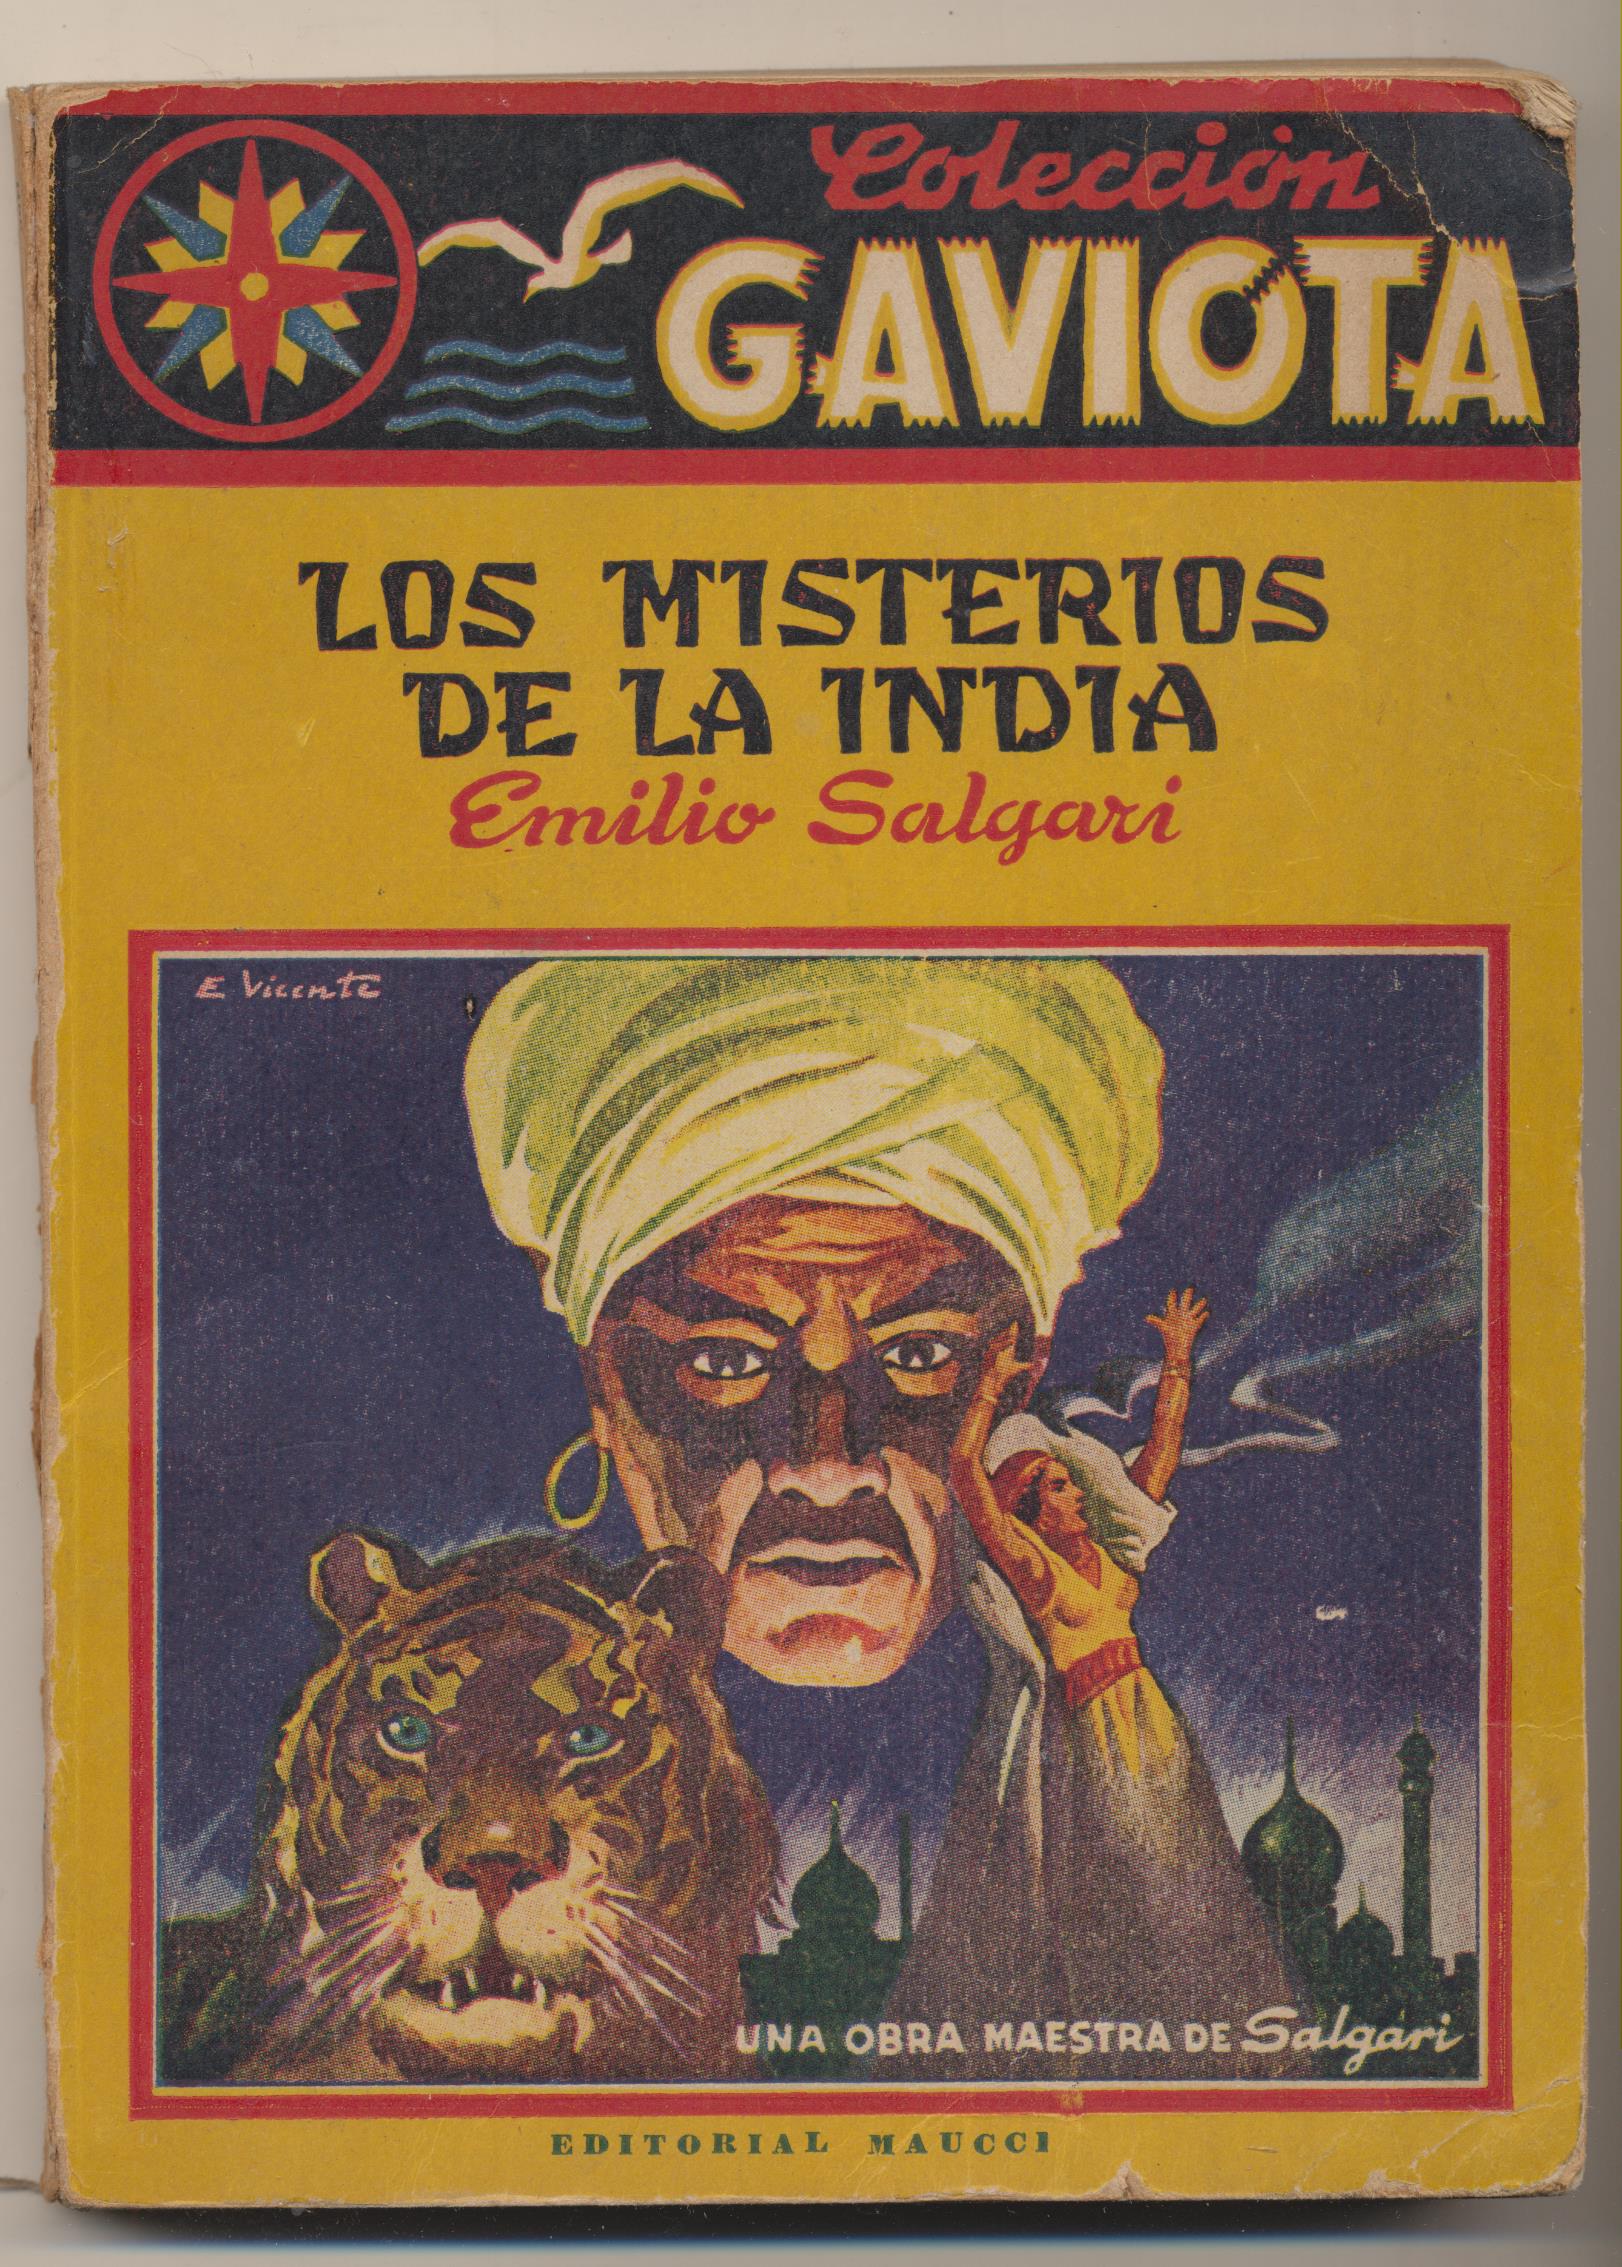 Colección Gaviota. Los Misterios de la India por Emilio Salgari. Editorial Maucci